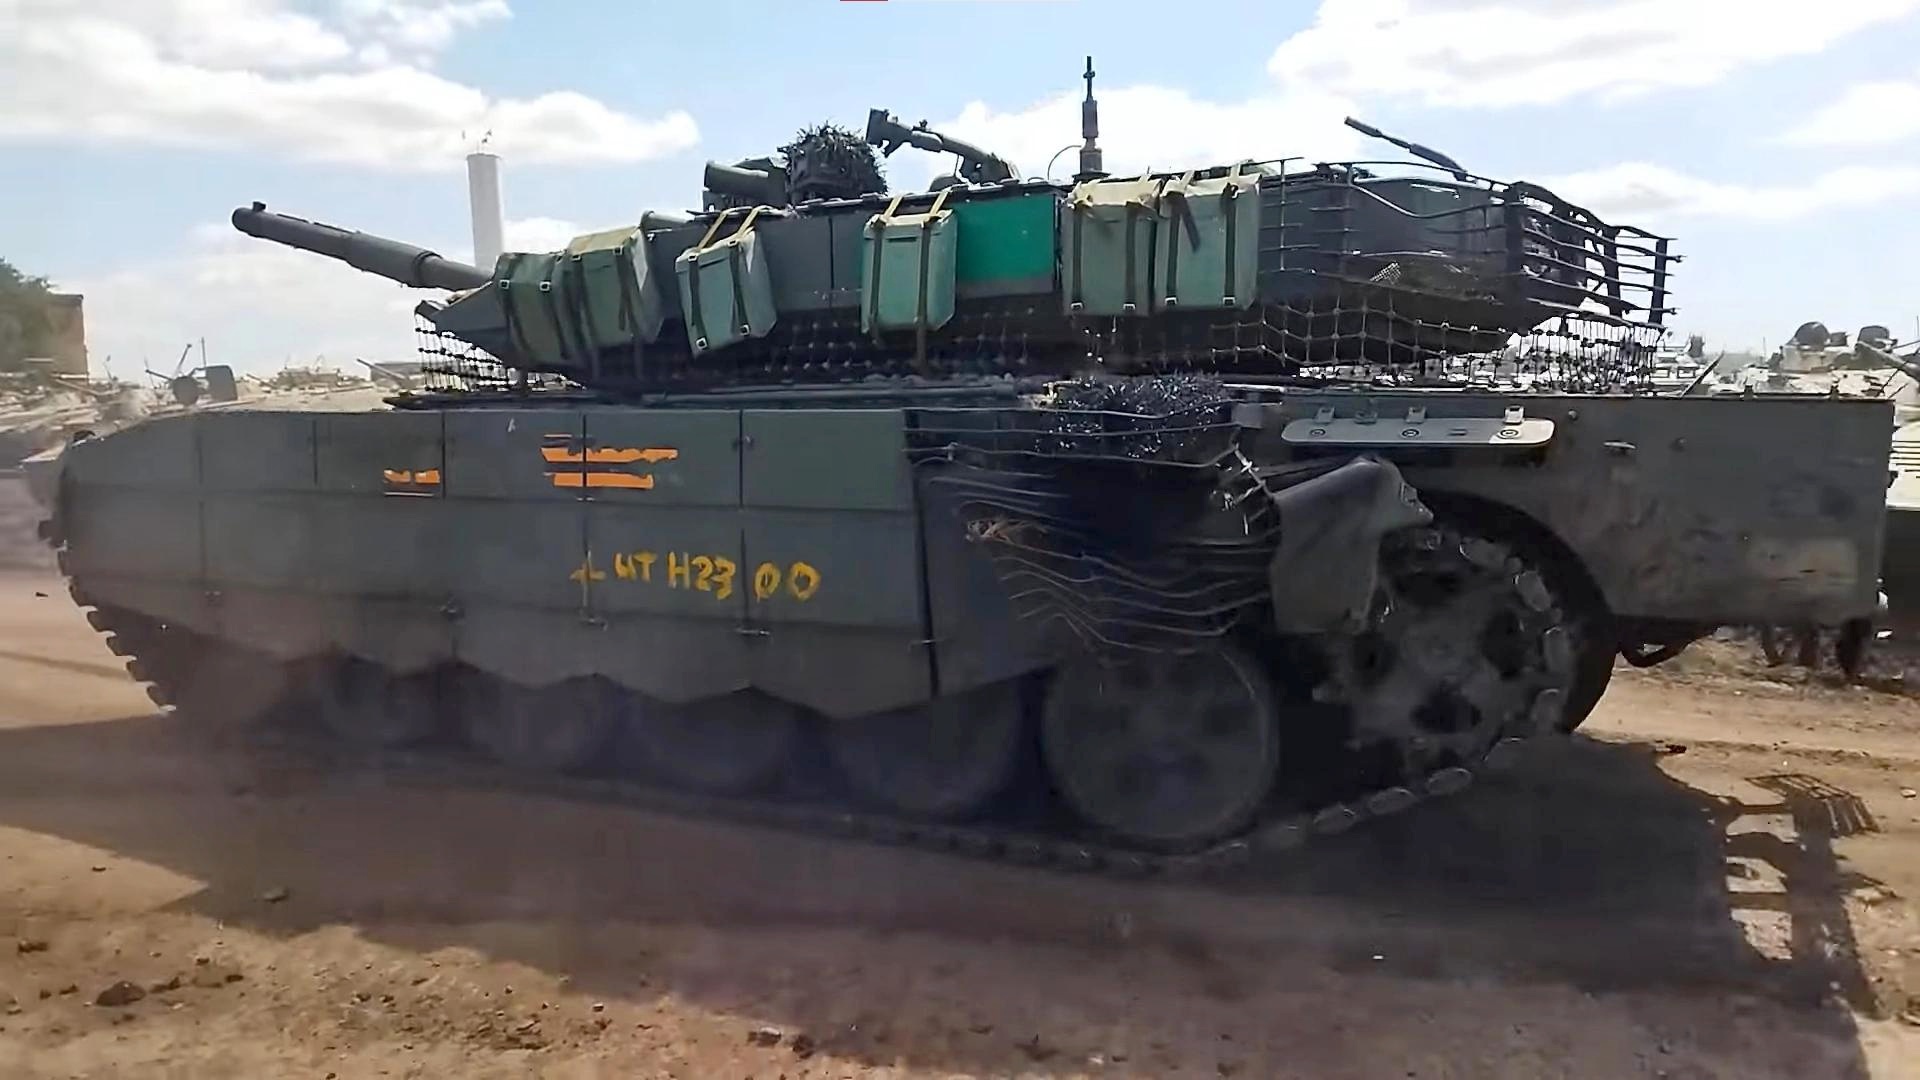 t-90m-tanks-in-ukraine-v0-r4a5e03c16m91.jpg